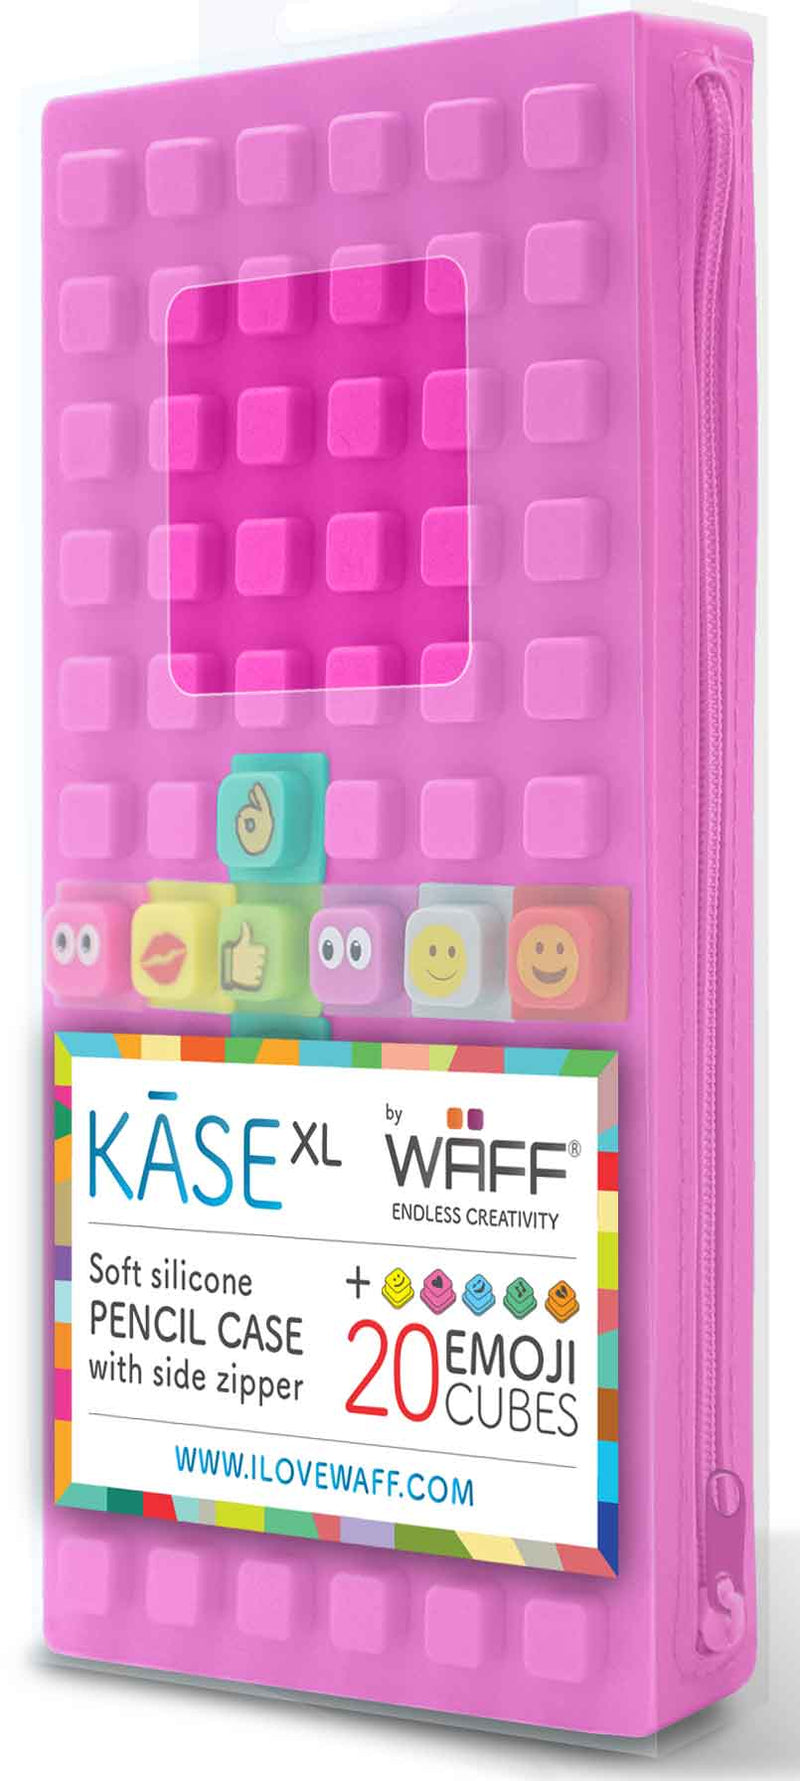 Waff Pencil Case XL (Purple) in package